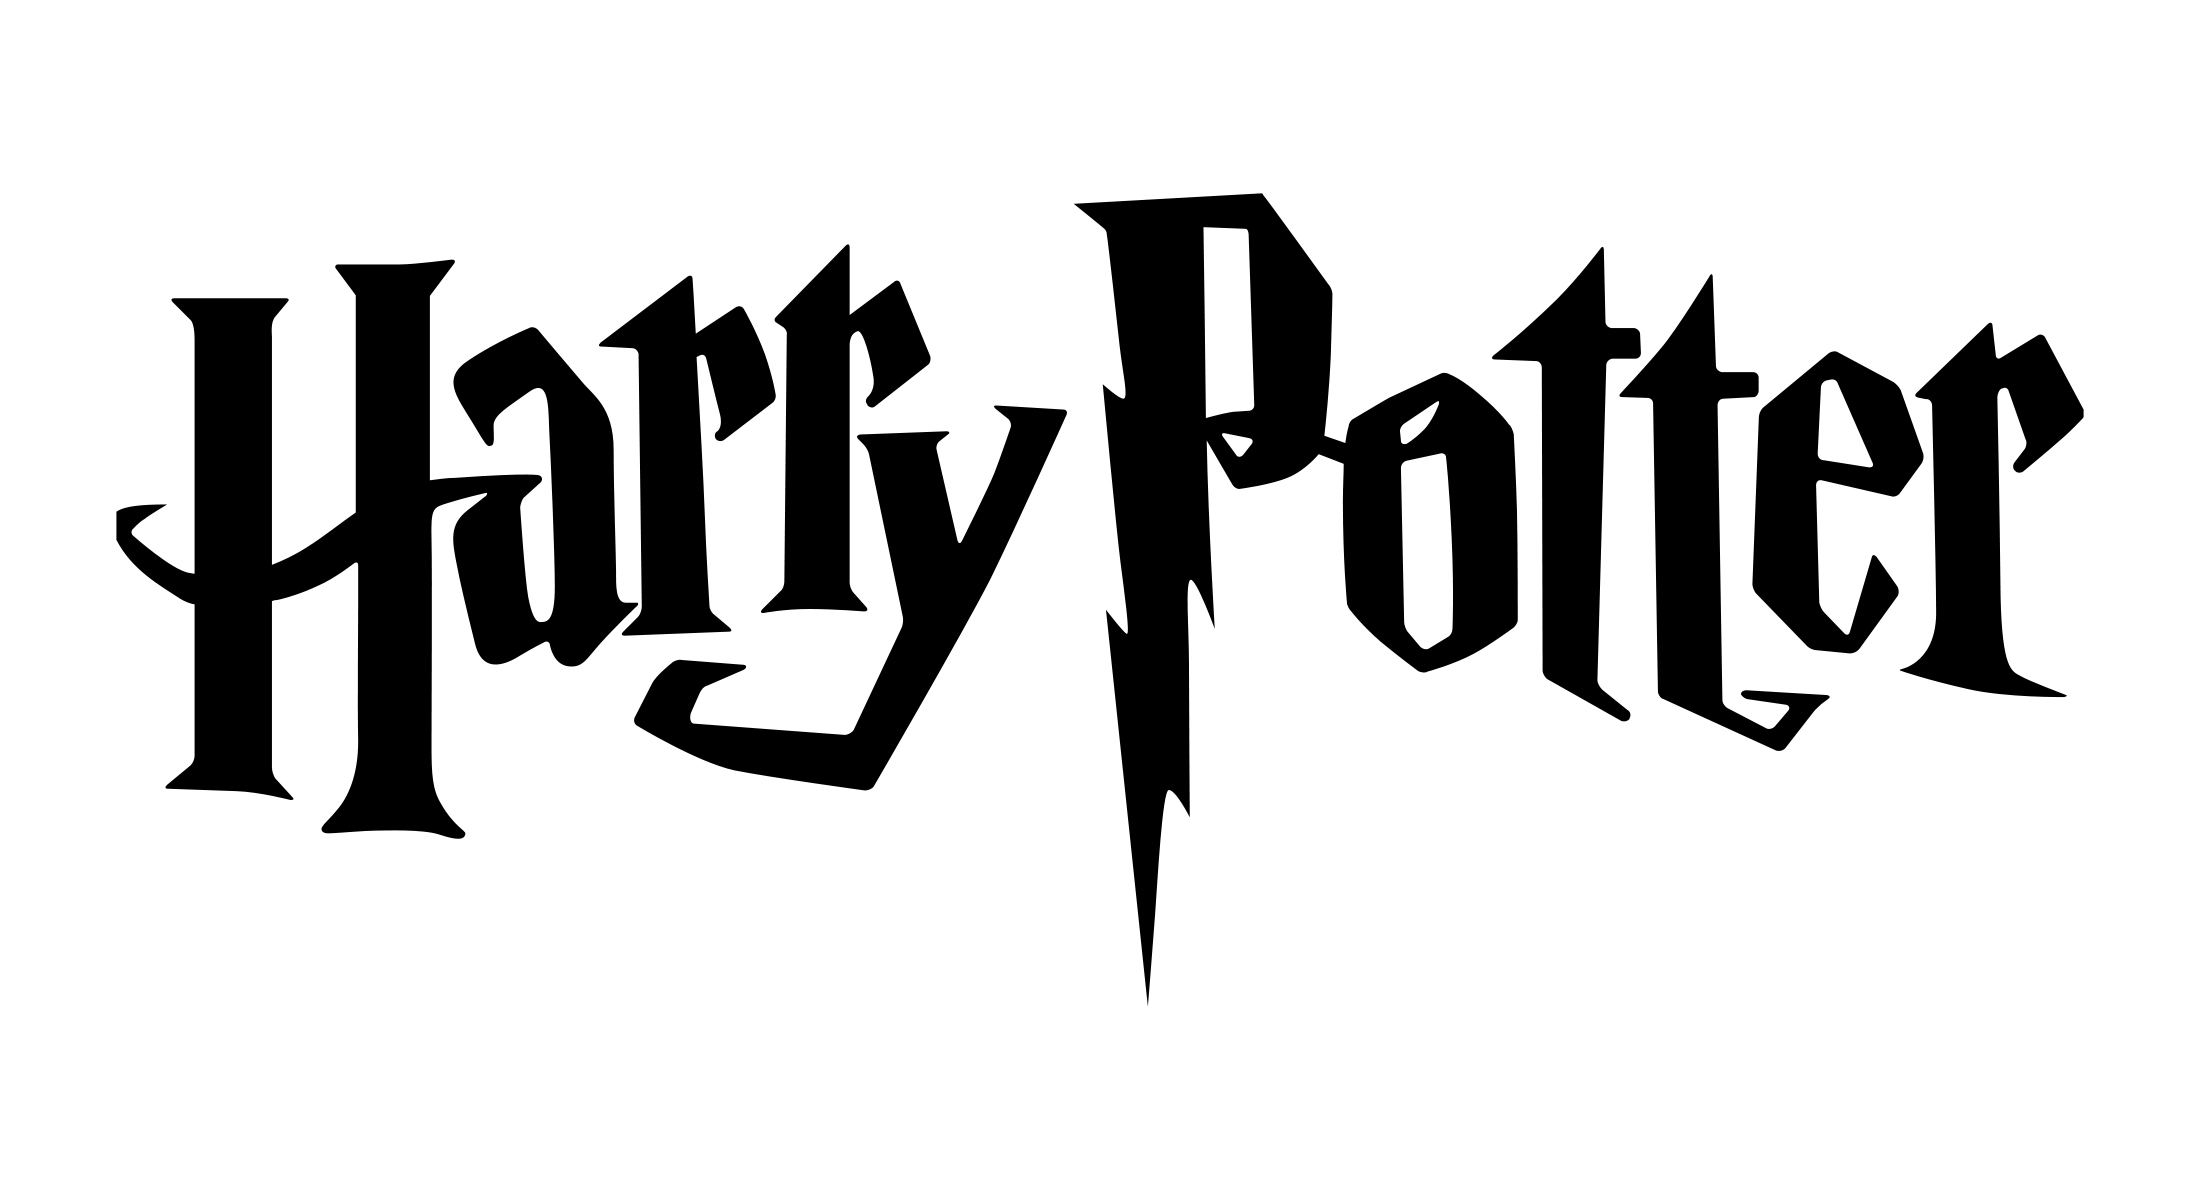 Résultat de recherche d'images pour "harry potter logo"